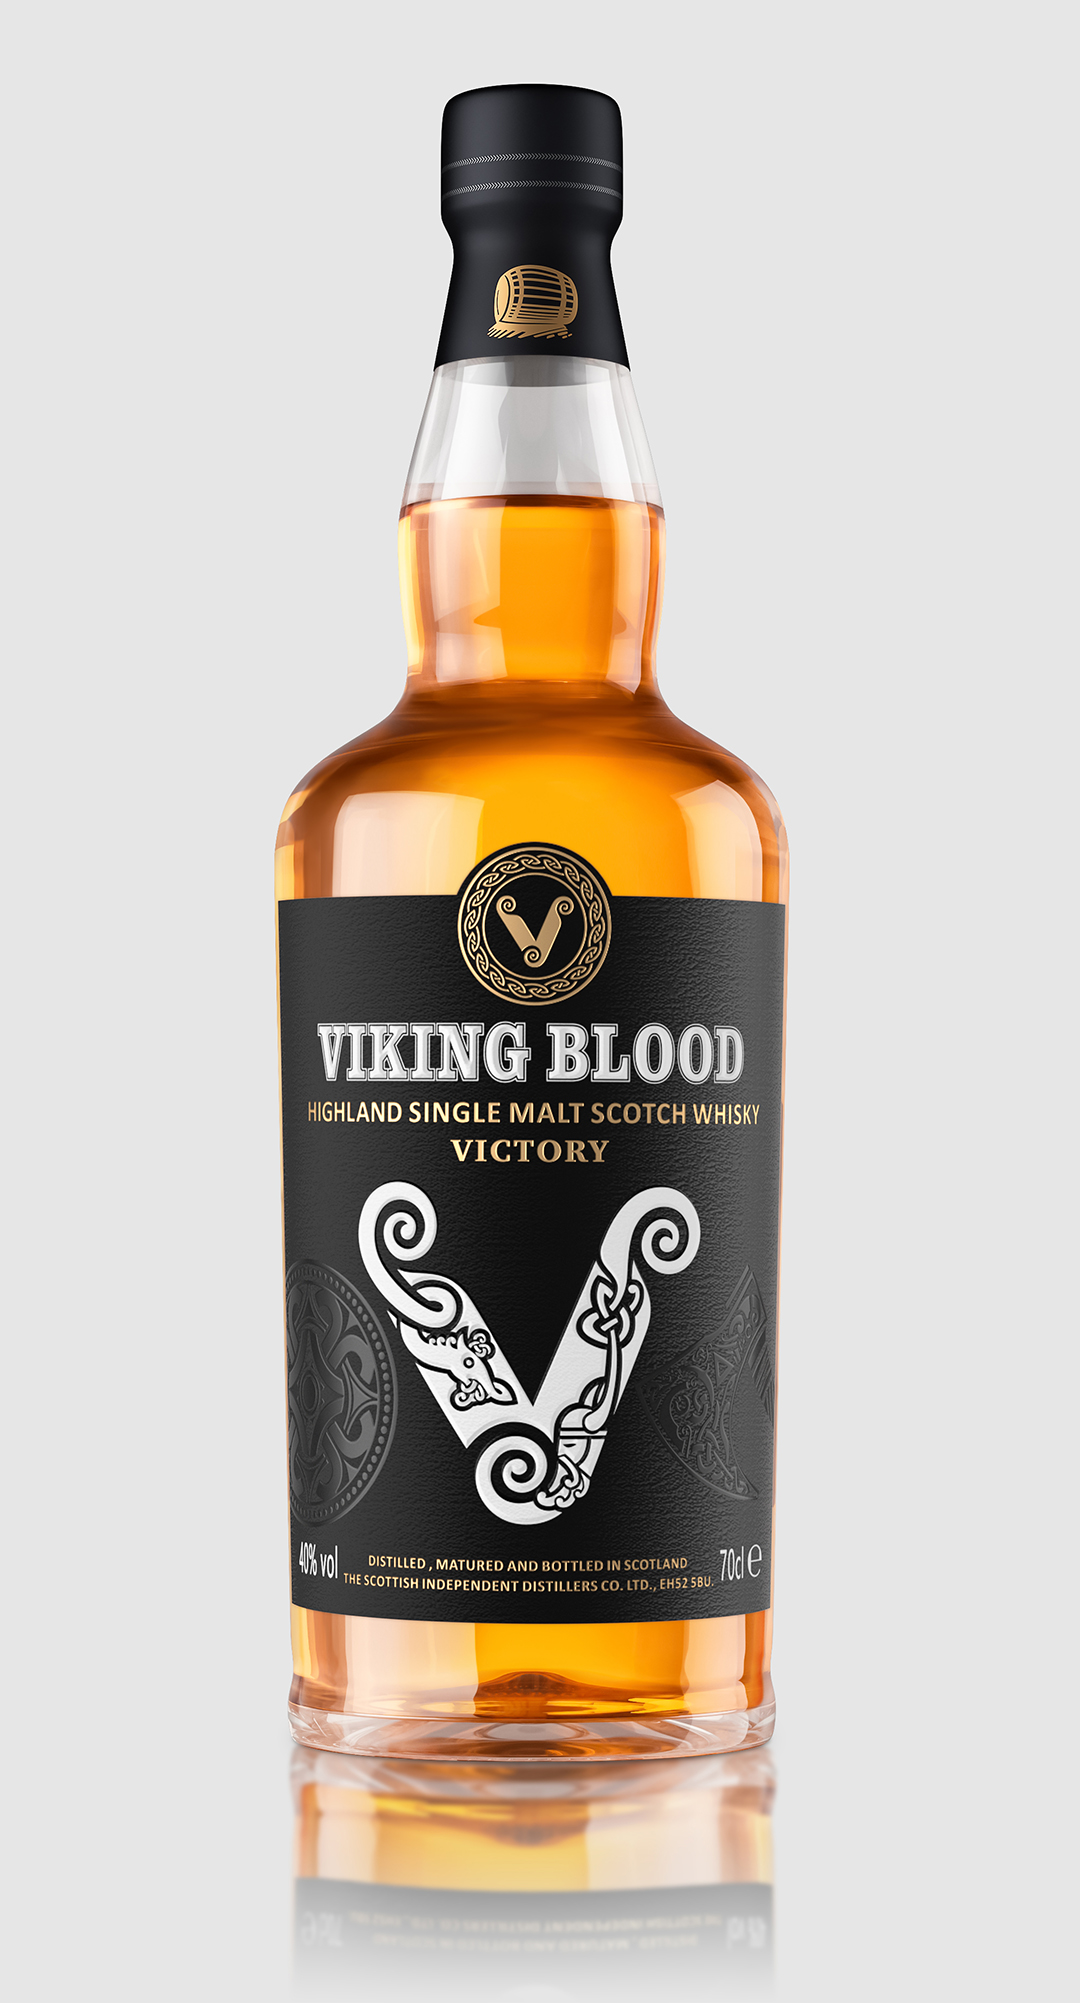 威士忌酒瓶-Viking Blood-正-微信推广用.jpg